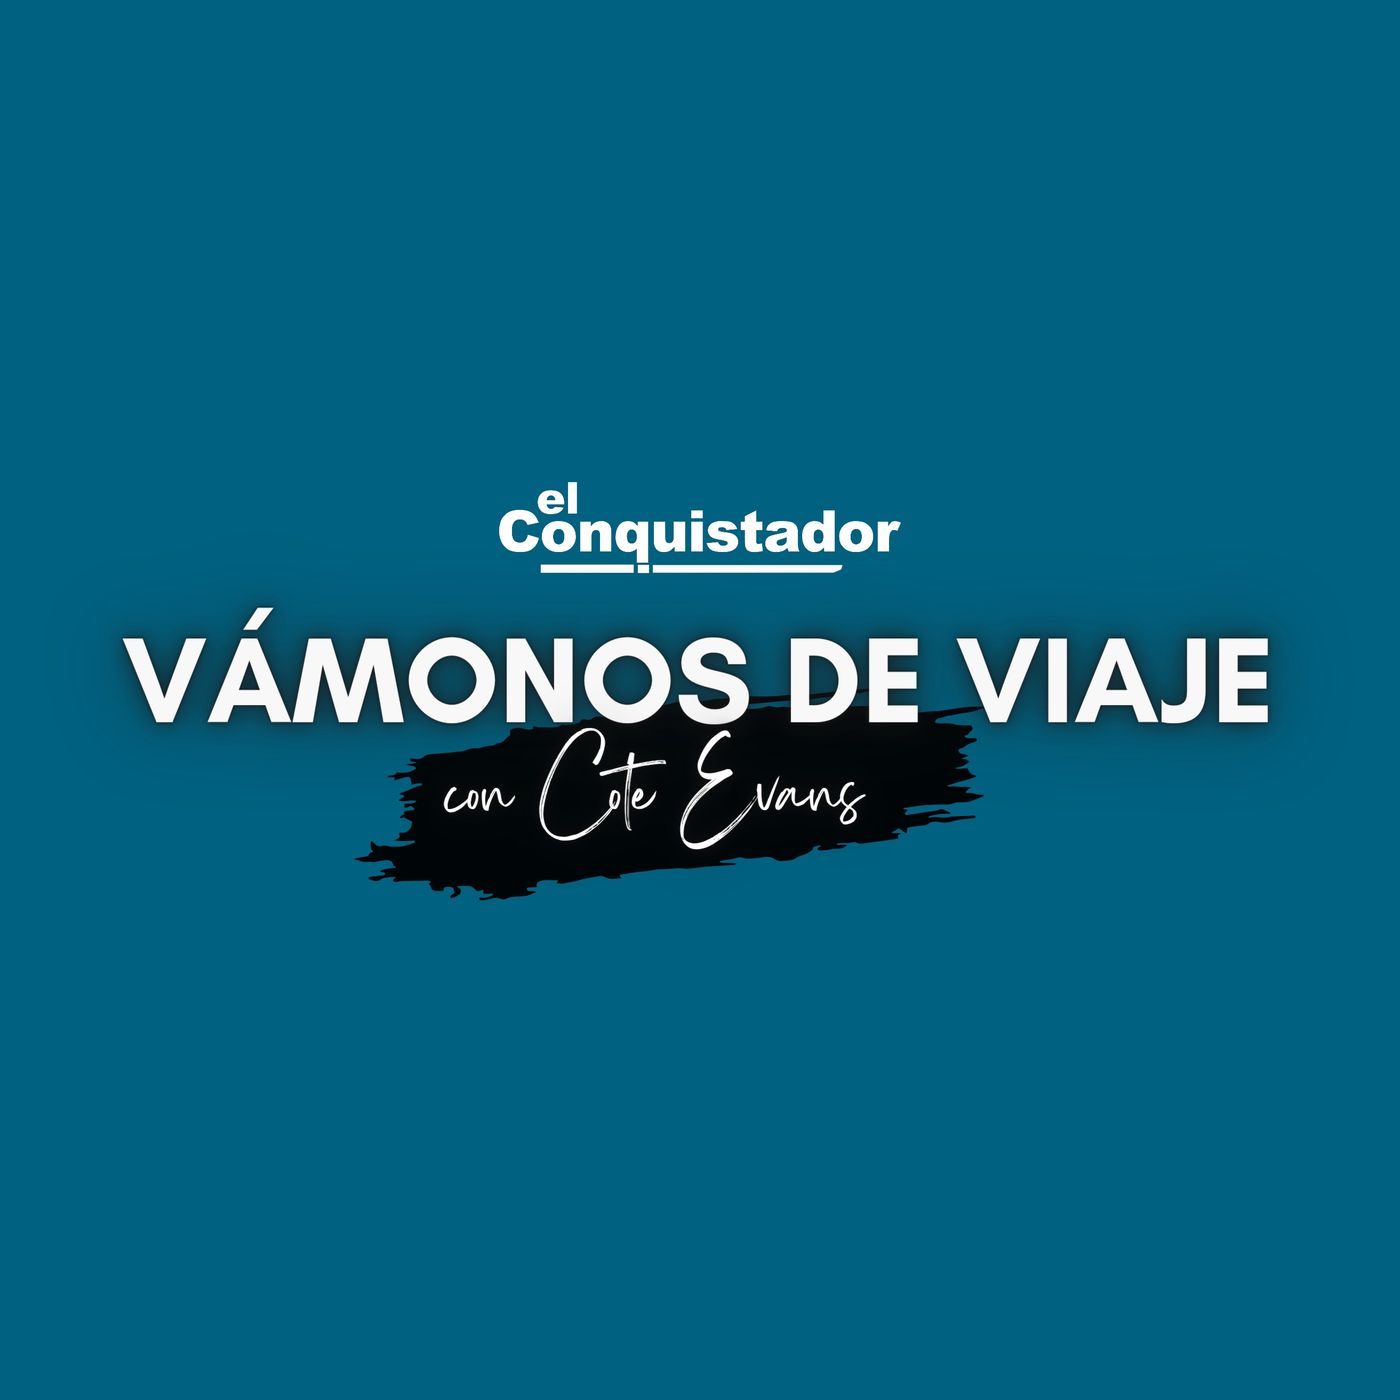 VAMONOS DE VIAJE 29-08-2021